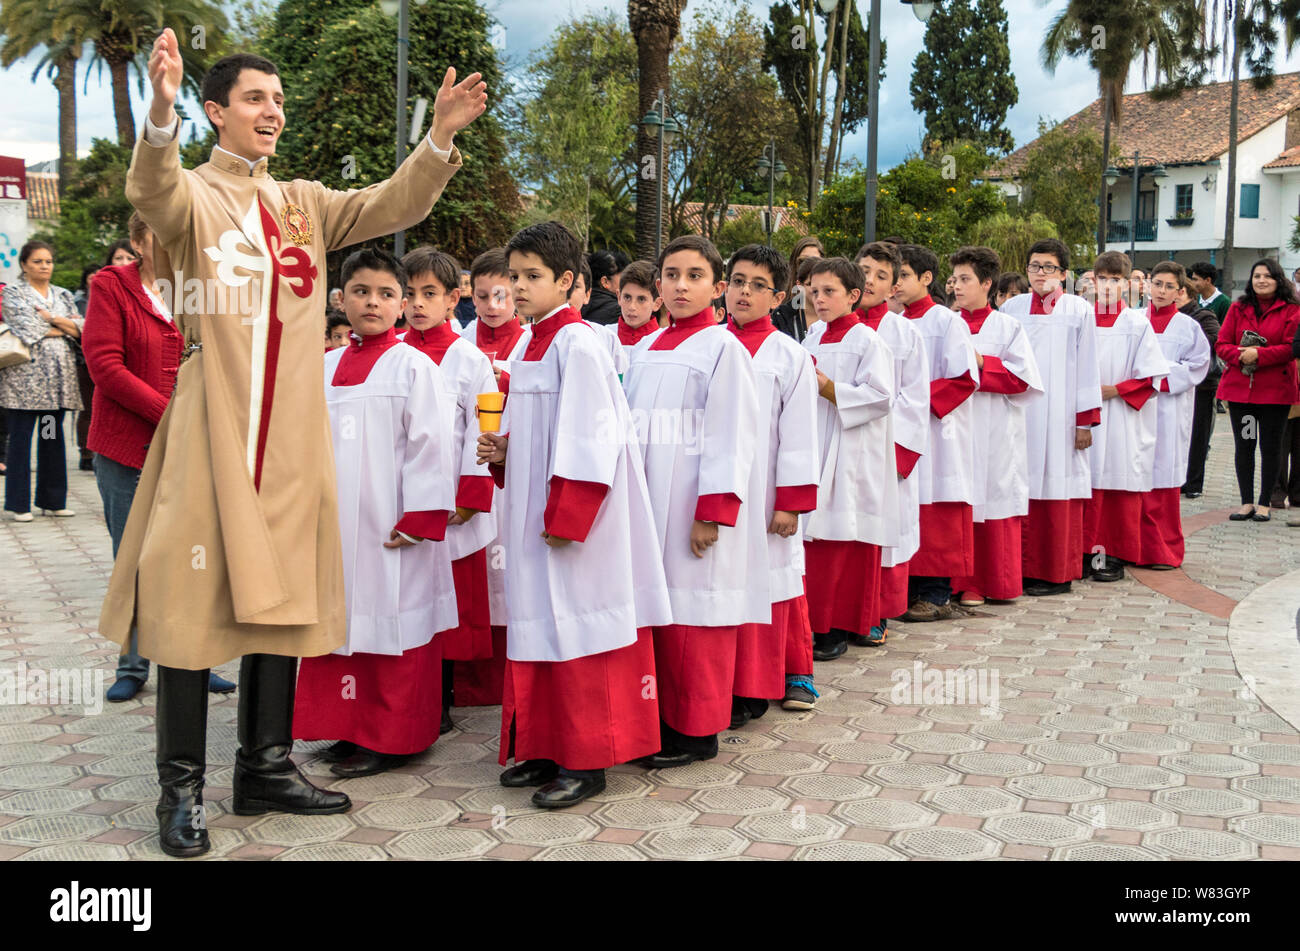 Cuenca, Équateur - 4 juin 2015 - prêtre curé catholique stagiaire parle aux jeunes garçons avant la procession Corpus Cristi Banque D'Images